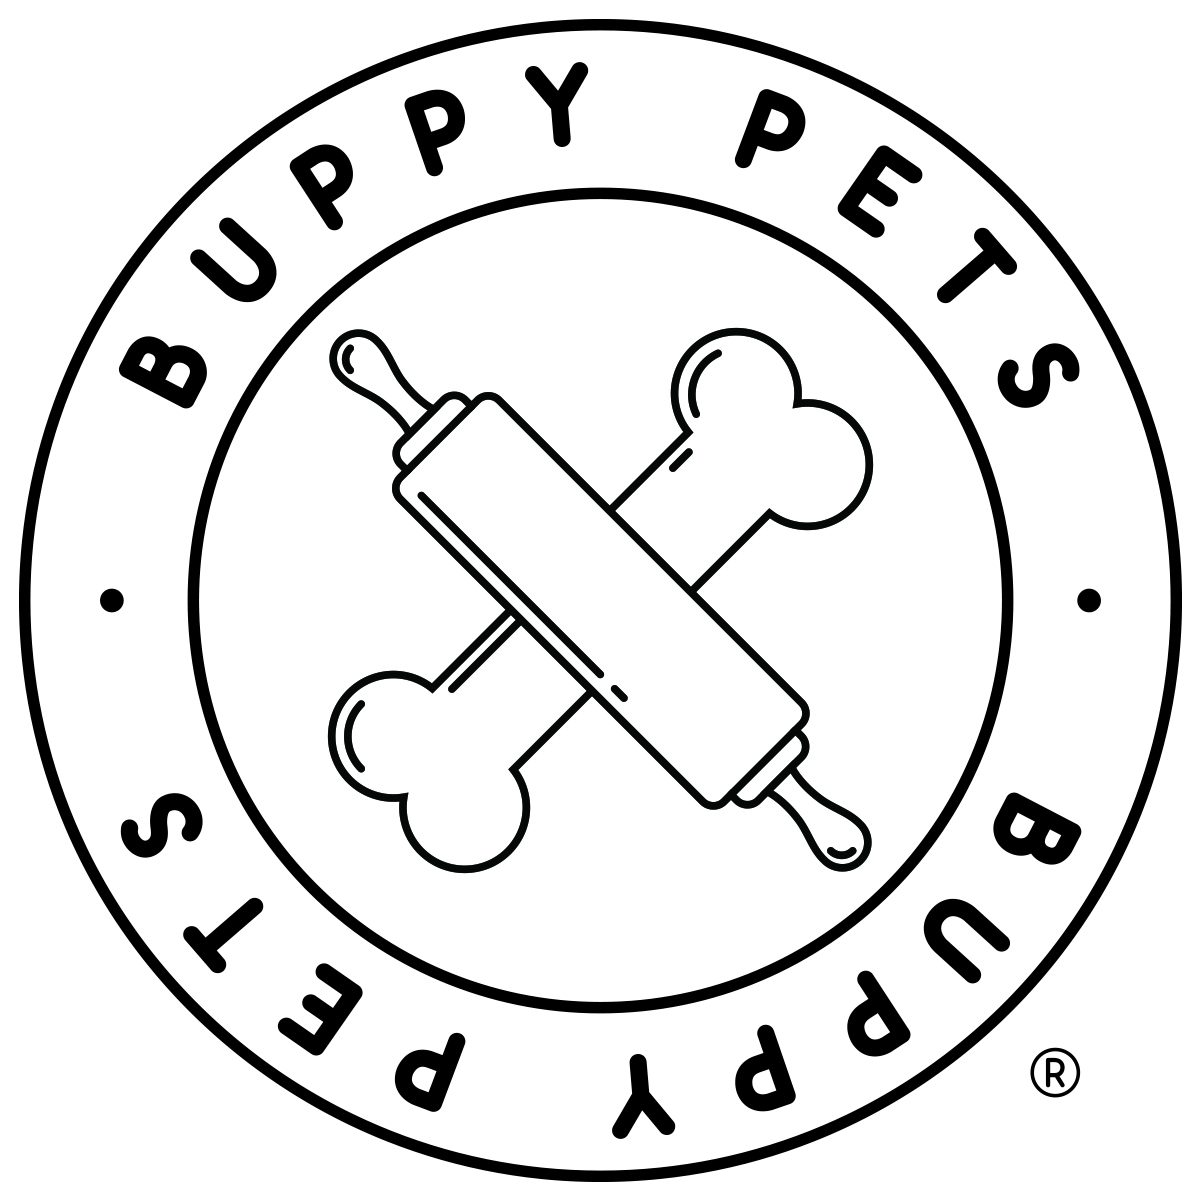 Buppy Pets